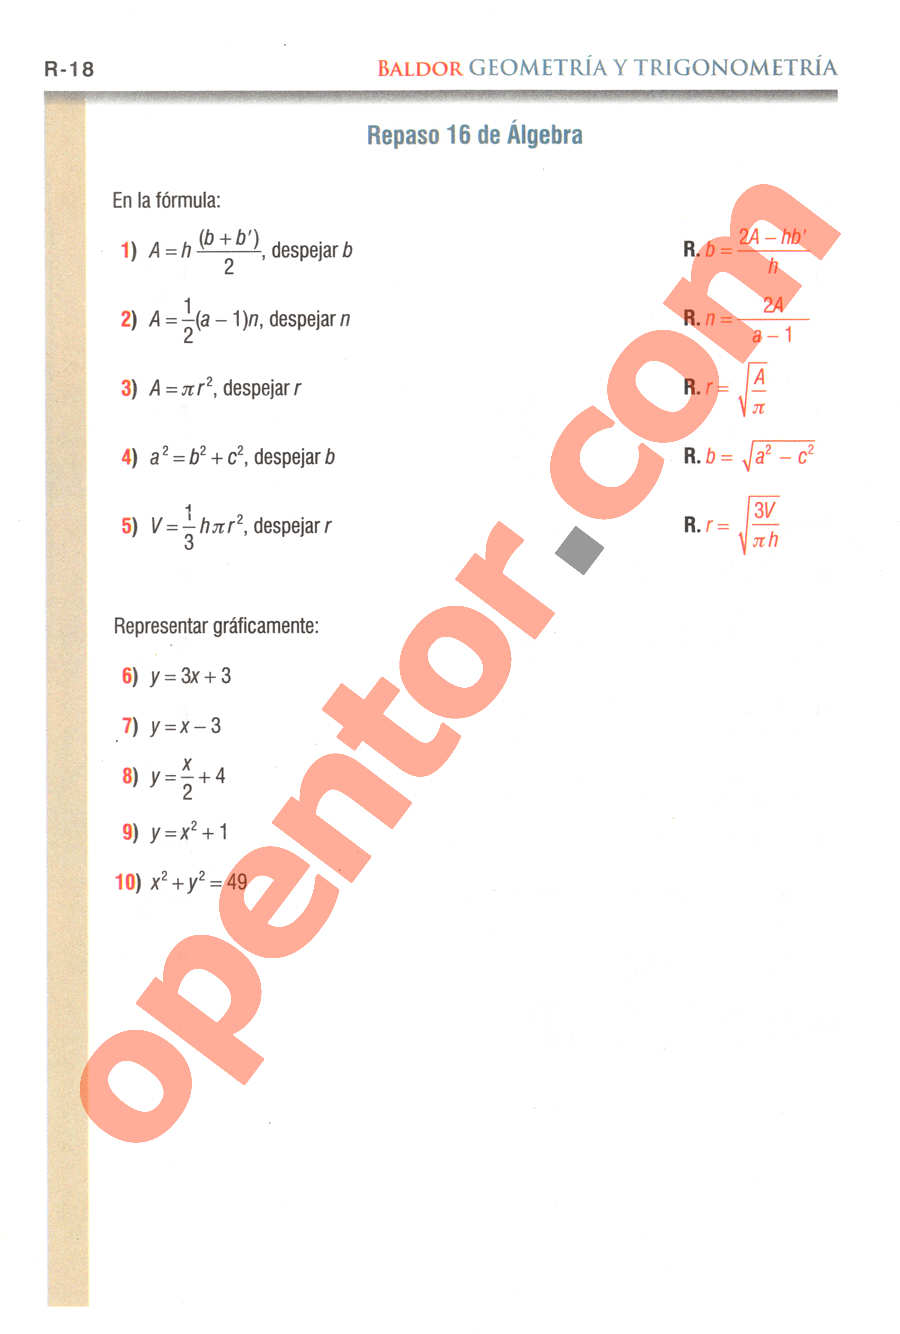 Geometría y Trigonometría de Baldor - Página R18